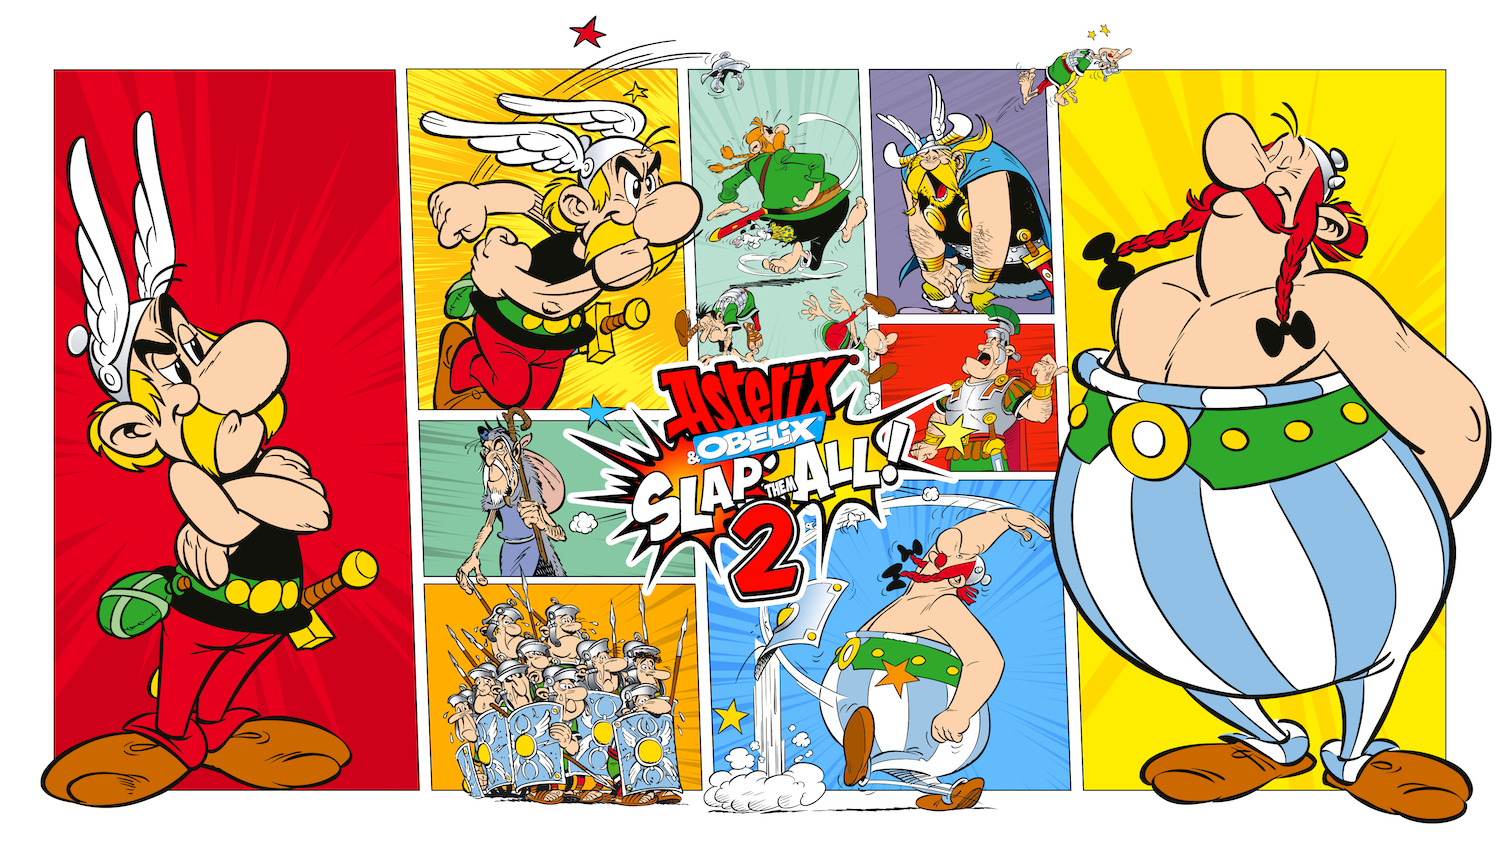 Microids unveils Asterix & Obelix: Slap Them All! 2